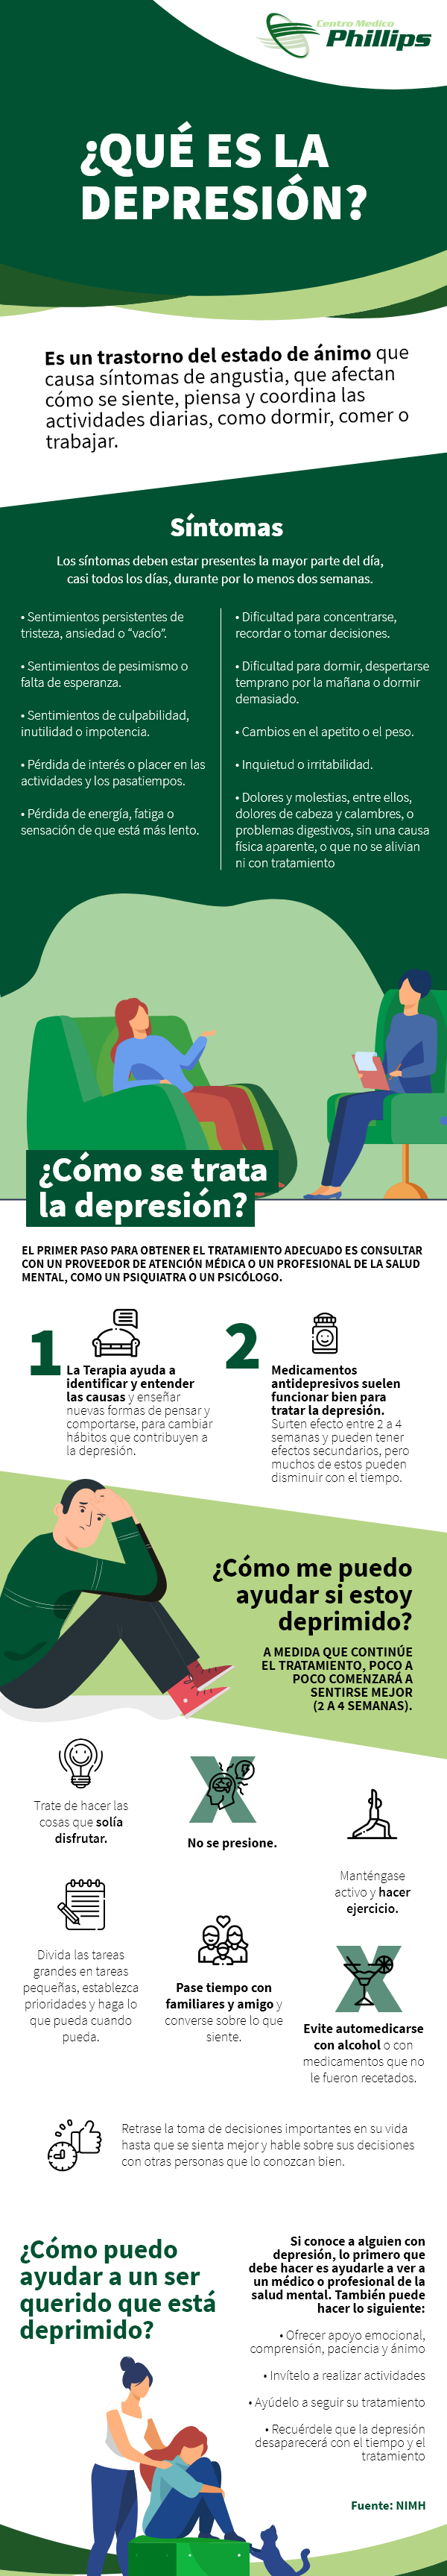 Infografia depresión